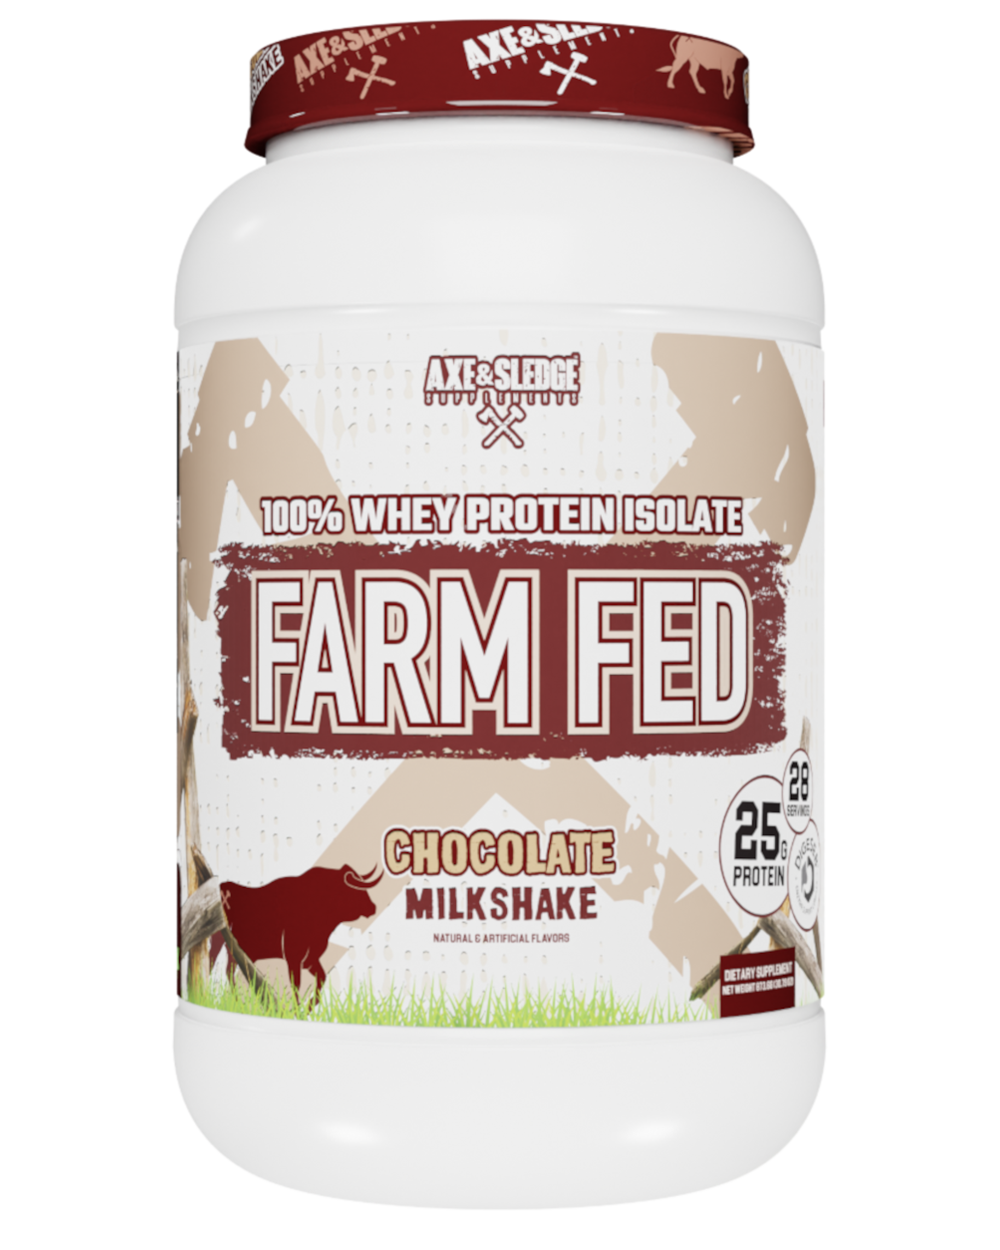 Farm Fed // 25g Protein